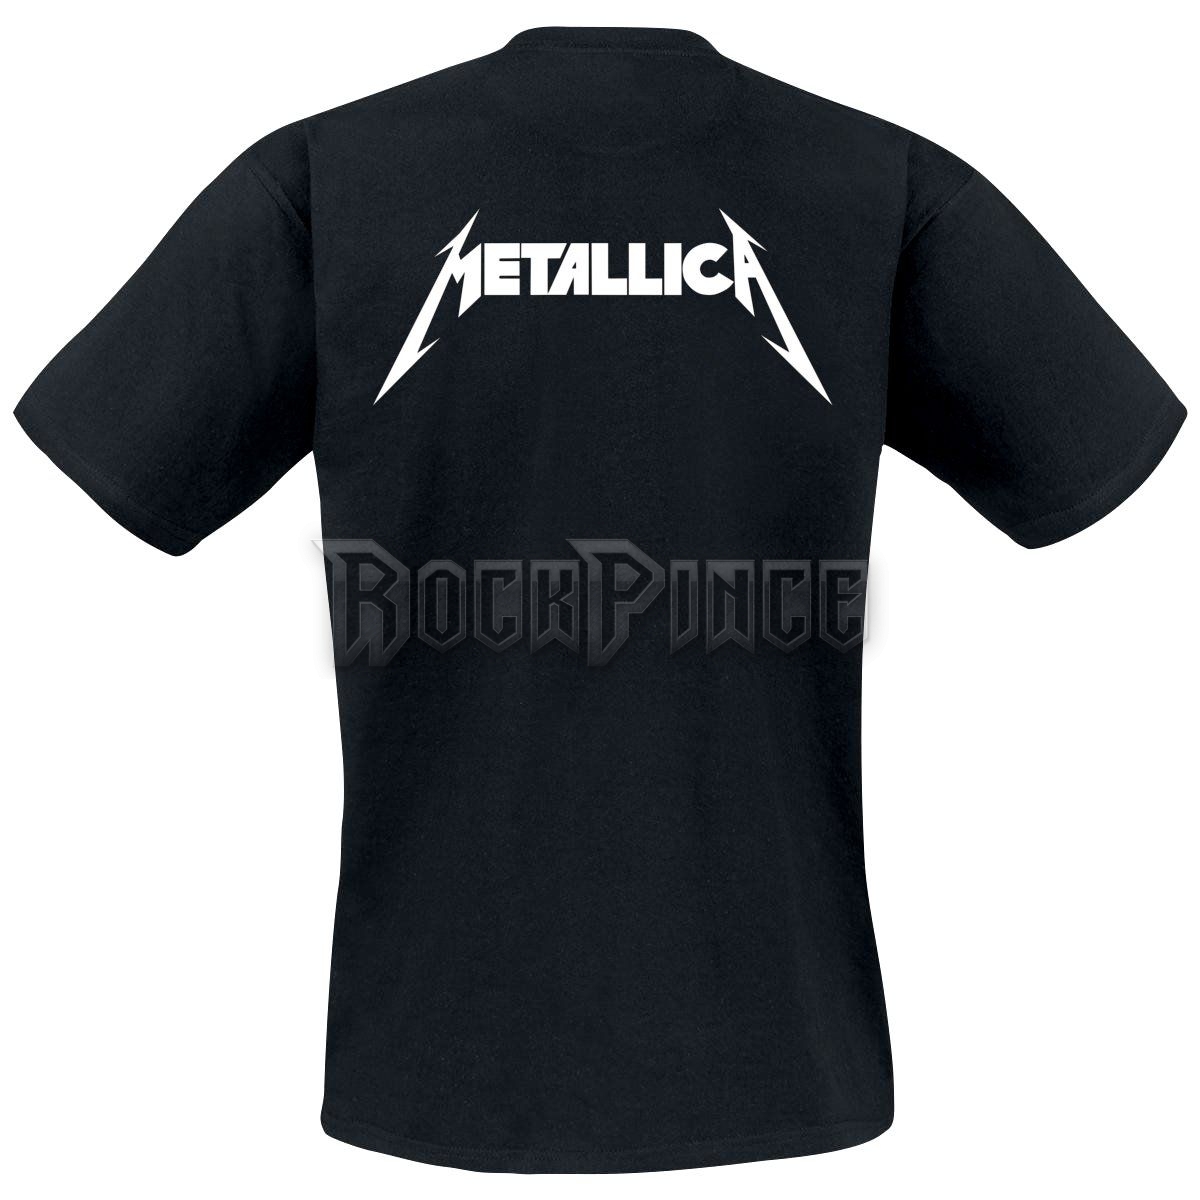 Metallica - Kill' Em All - UNISEX PÓLÓ